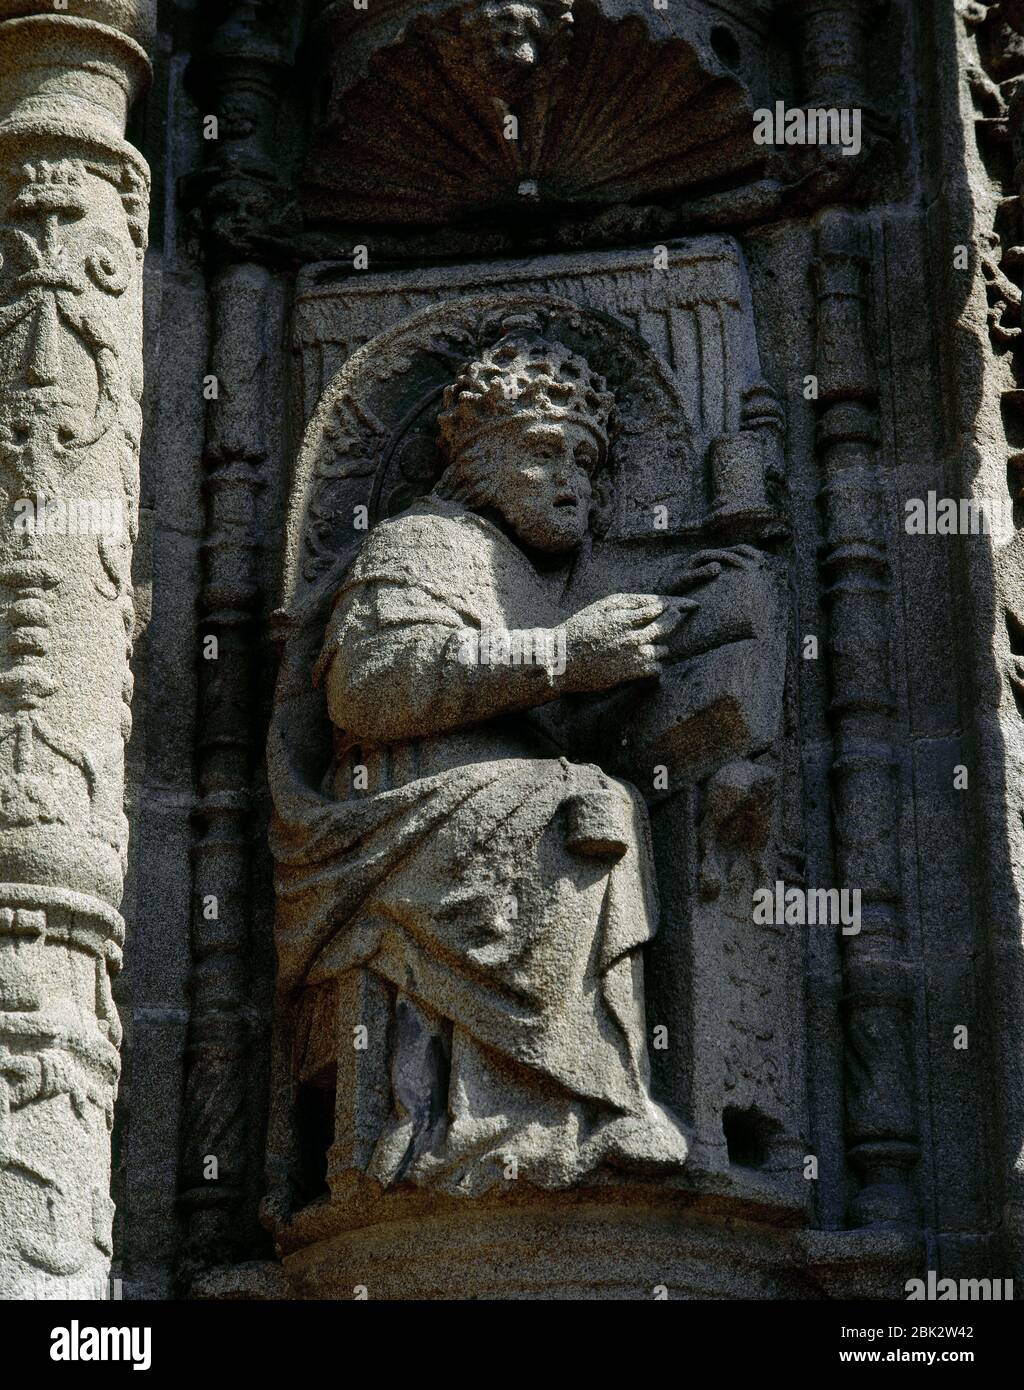 Papst Gregor I. (c.. 540-604). Bekannt als St. Gregor der große, war er Papst von 590 bis 604. Statue des flämischen Bildhauers Cornelius de Holanda (16. Jahrhundert), in Galicien tätig. Hauptfassade der Basilika Santa Maria la Mayor. Pontevedra, Galicien, Spanien. Stockfoto